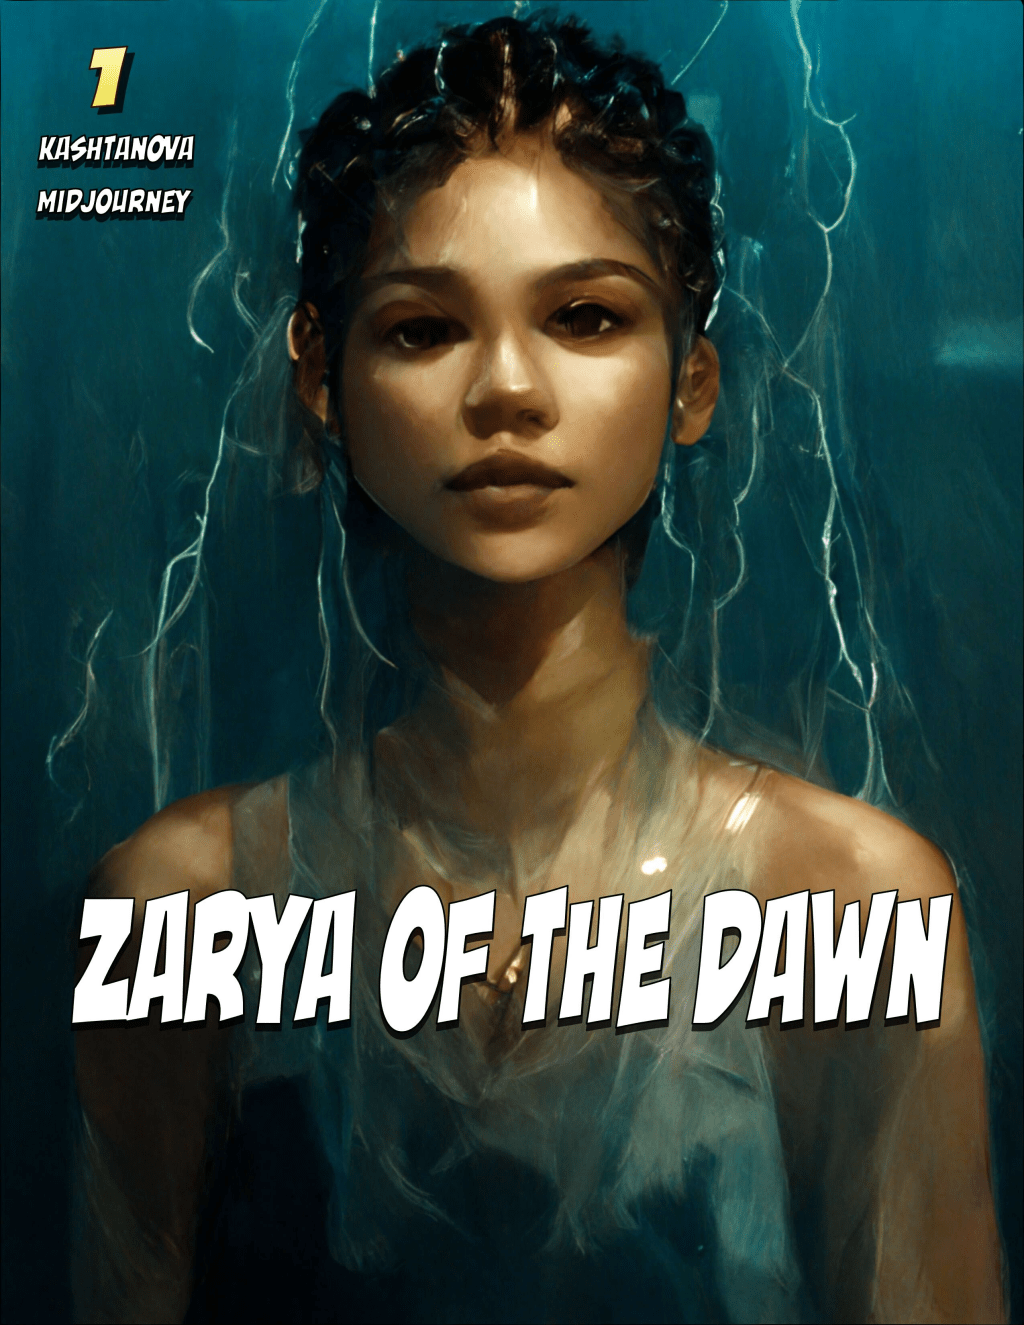 卡什塔諾娃創作了一本名為《Zarya of the Dawn》的漫畫書。